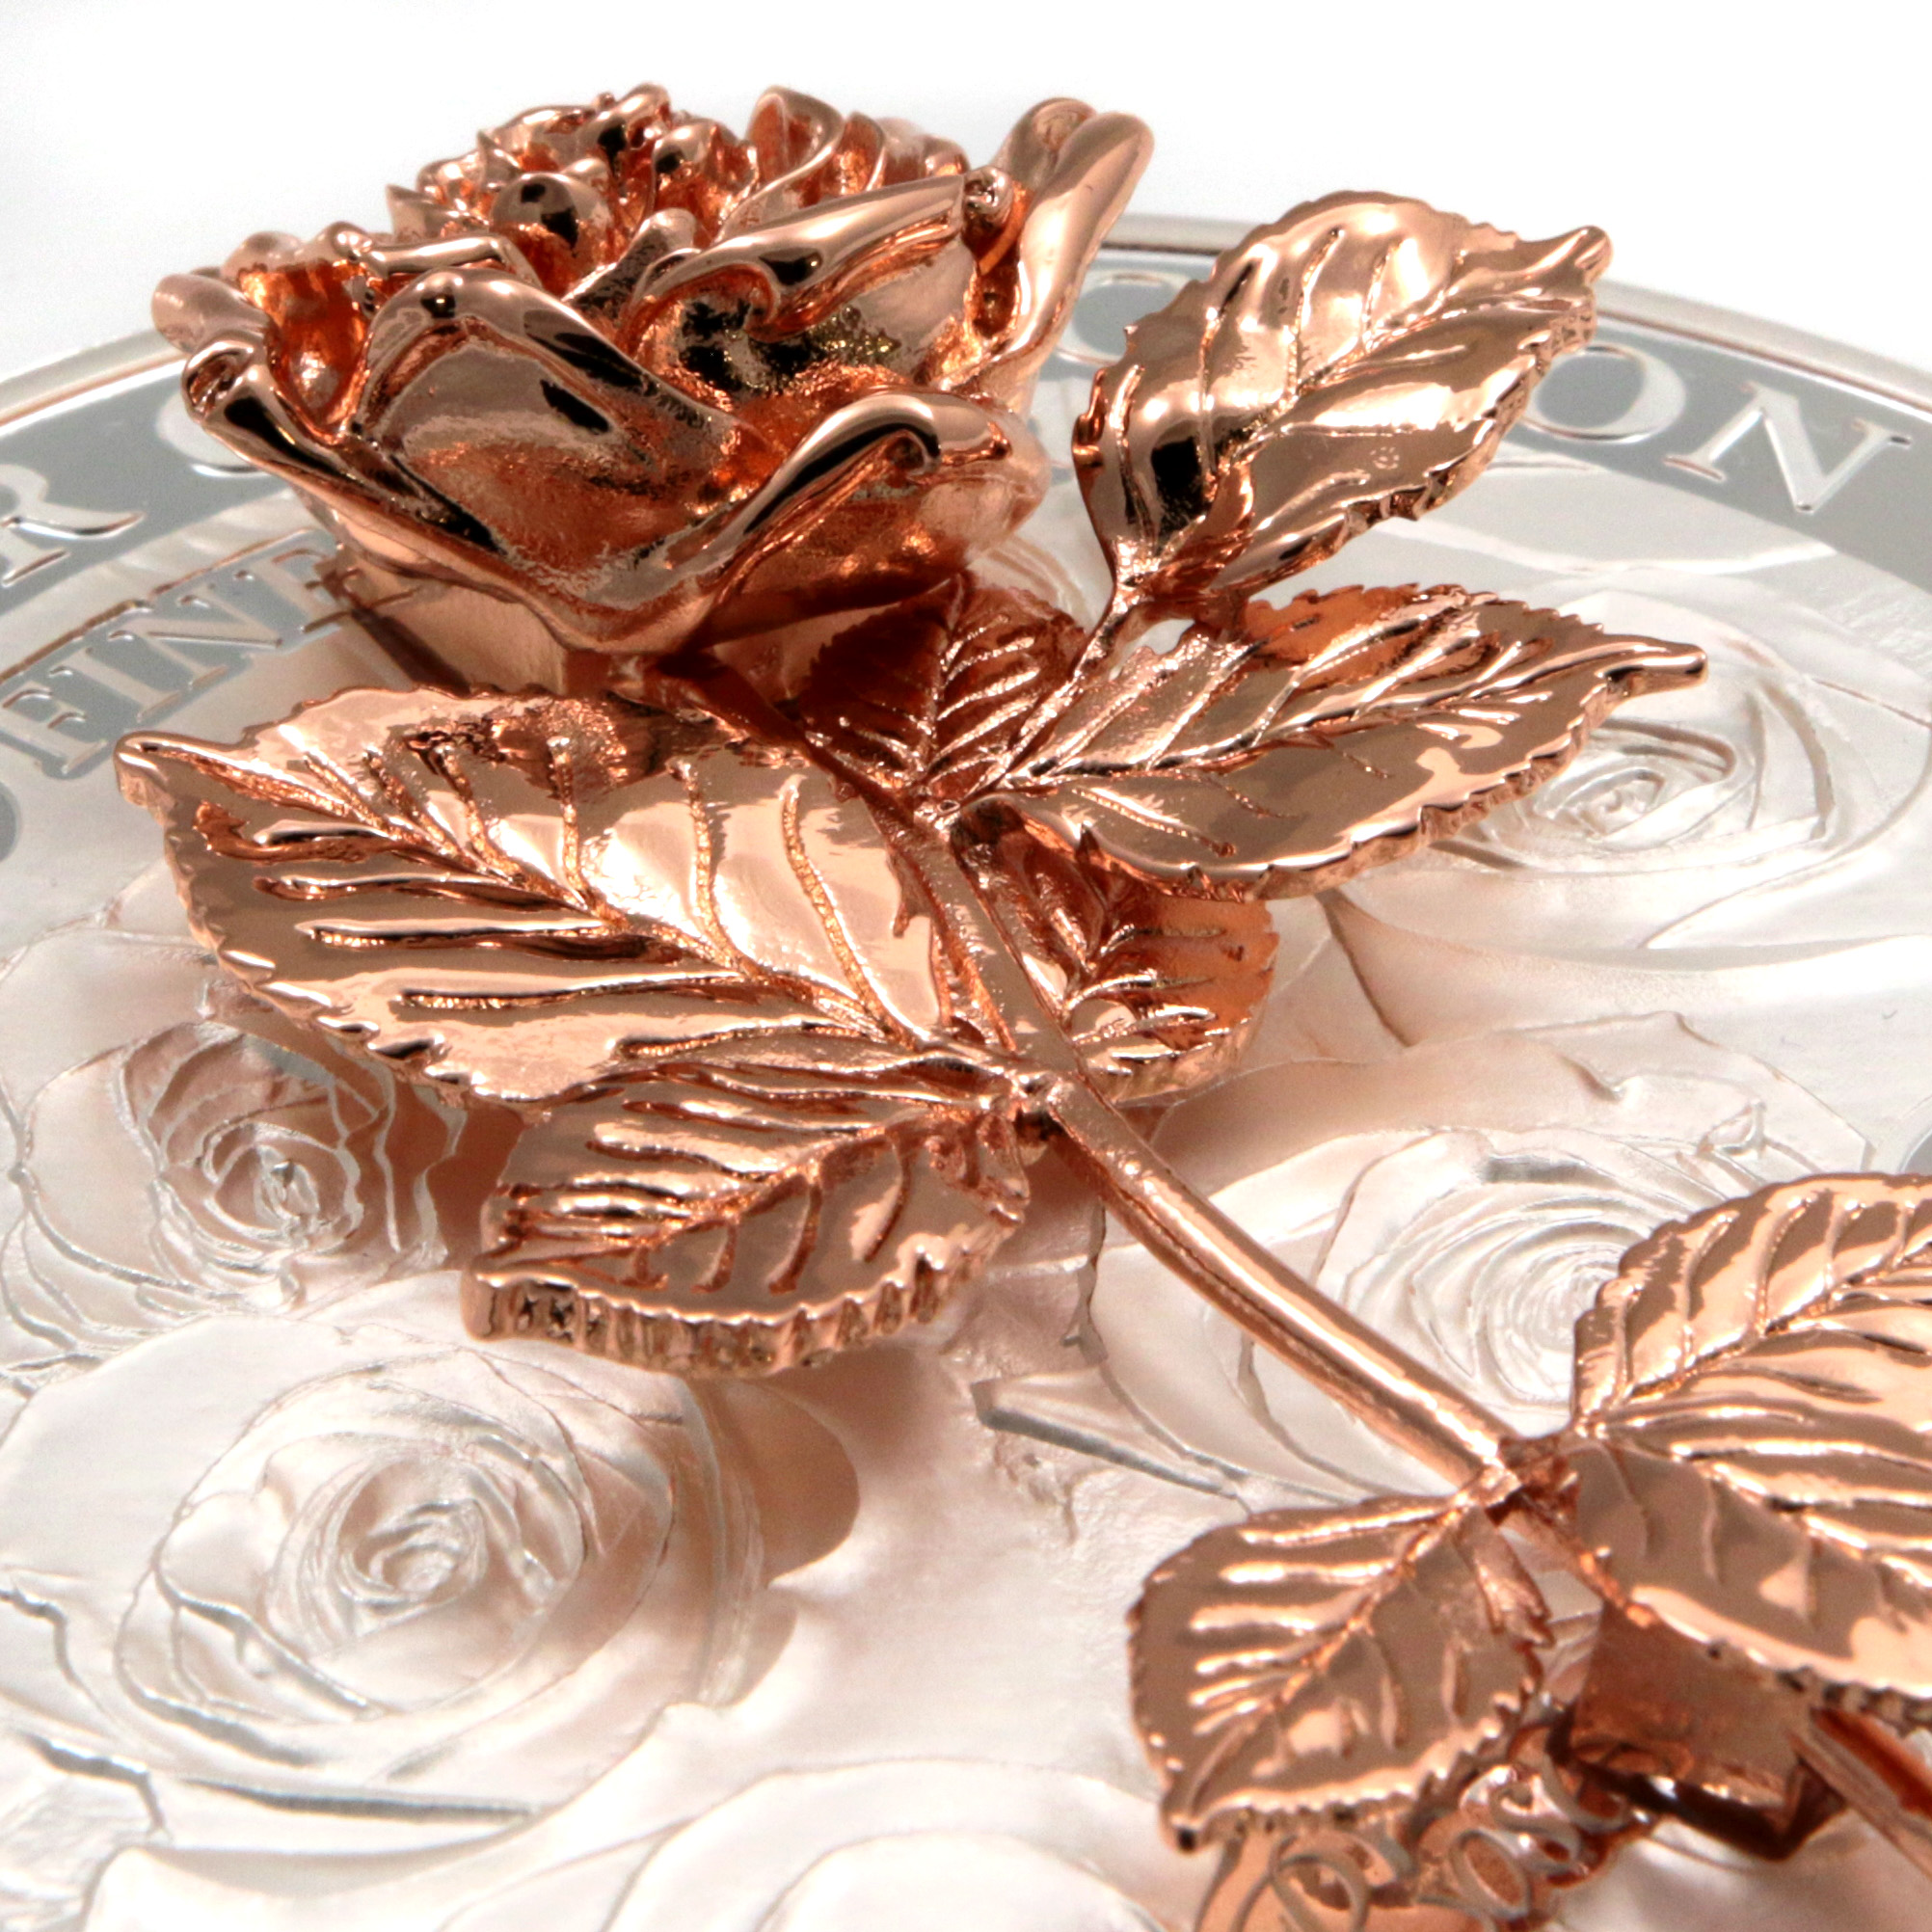 Stříbrná mince 1 kg Golden Flower Collection - zlatá 3D růže 2021 Proof